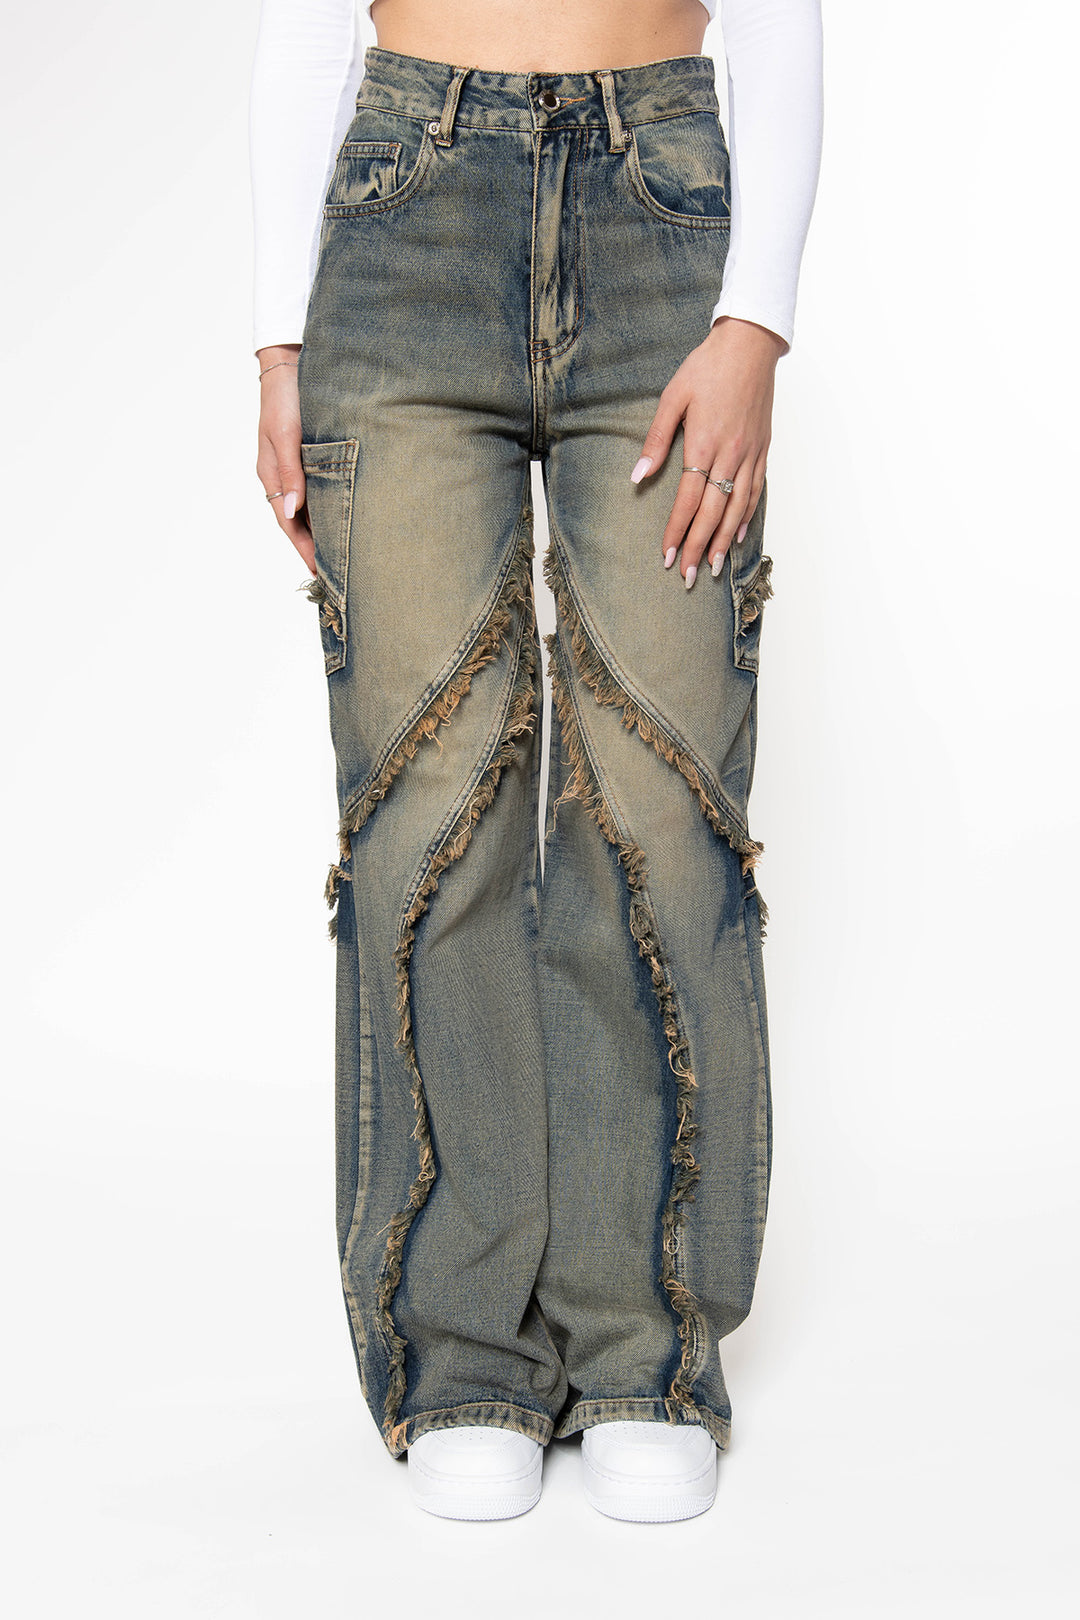 Britt Vintage Fringe Wide Leg Jeans Jeans Routines Fashion   